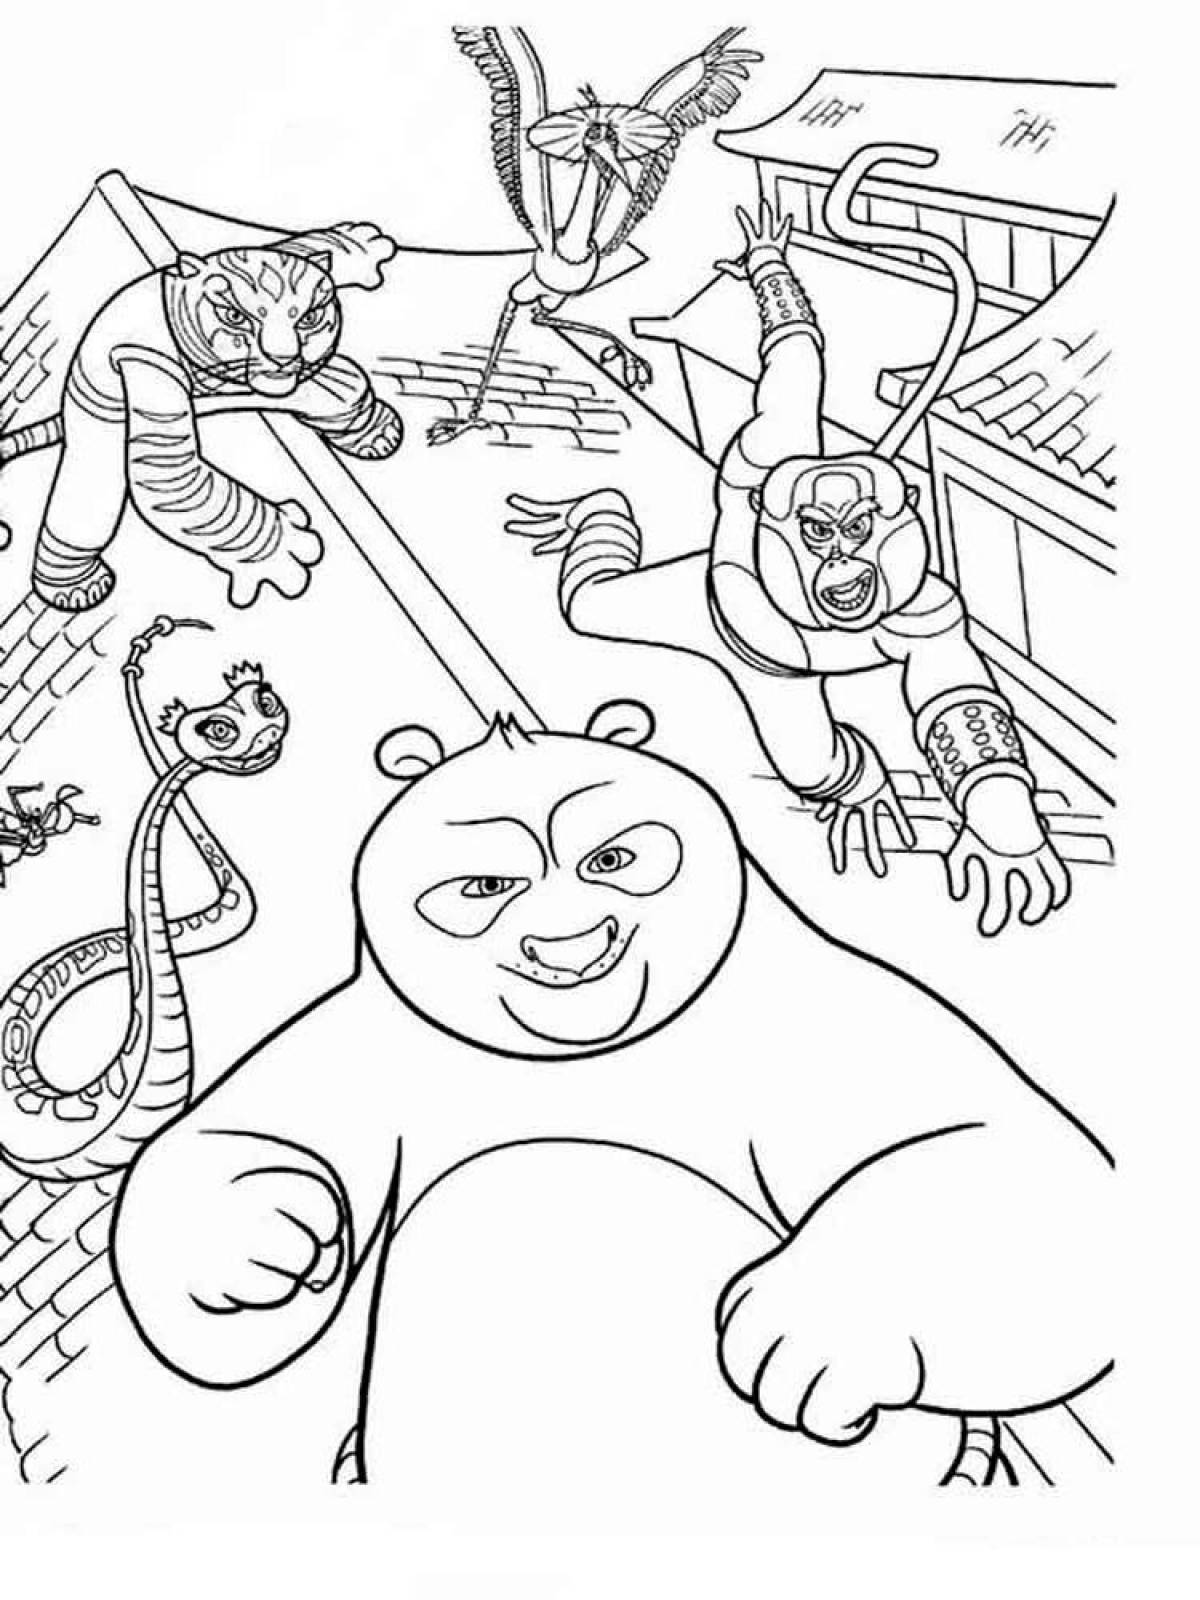 Colorful kung fu panda coloring page